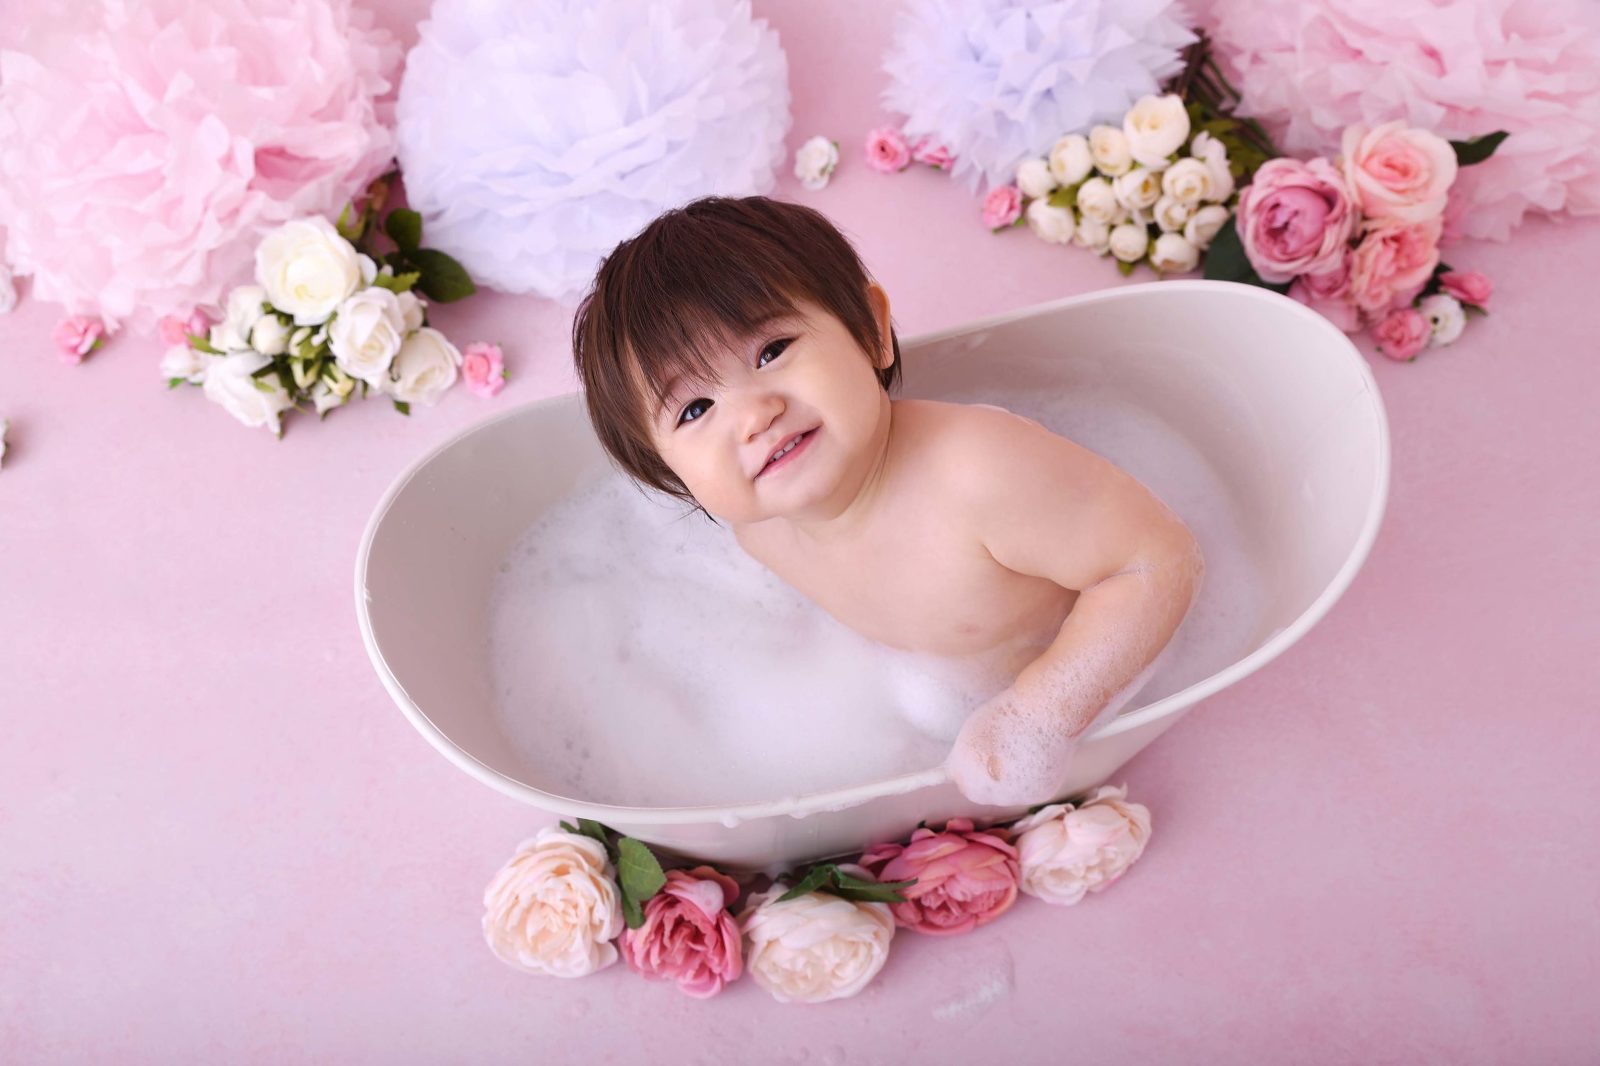 Bébé dans une baignoire entouré de fleurs